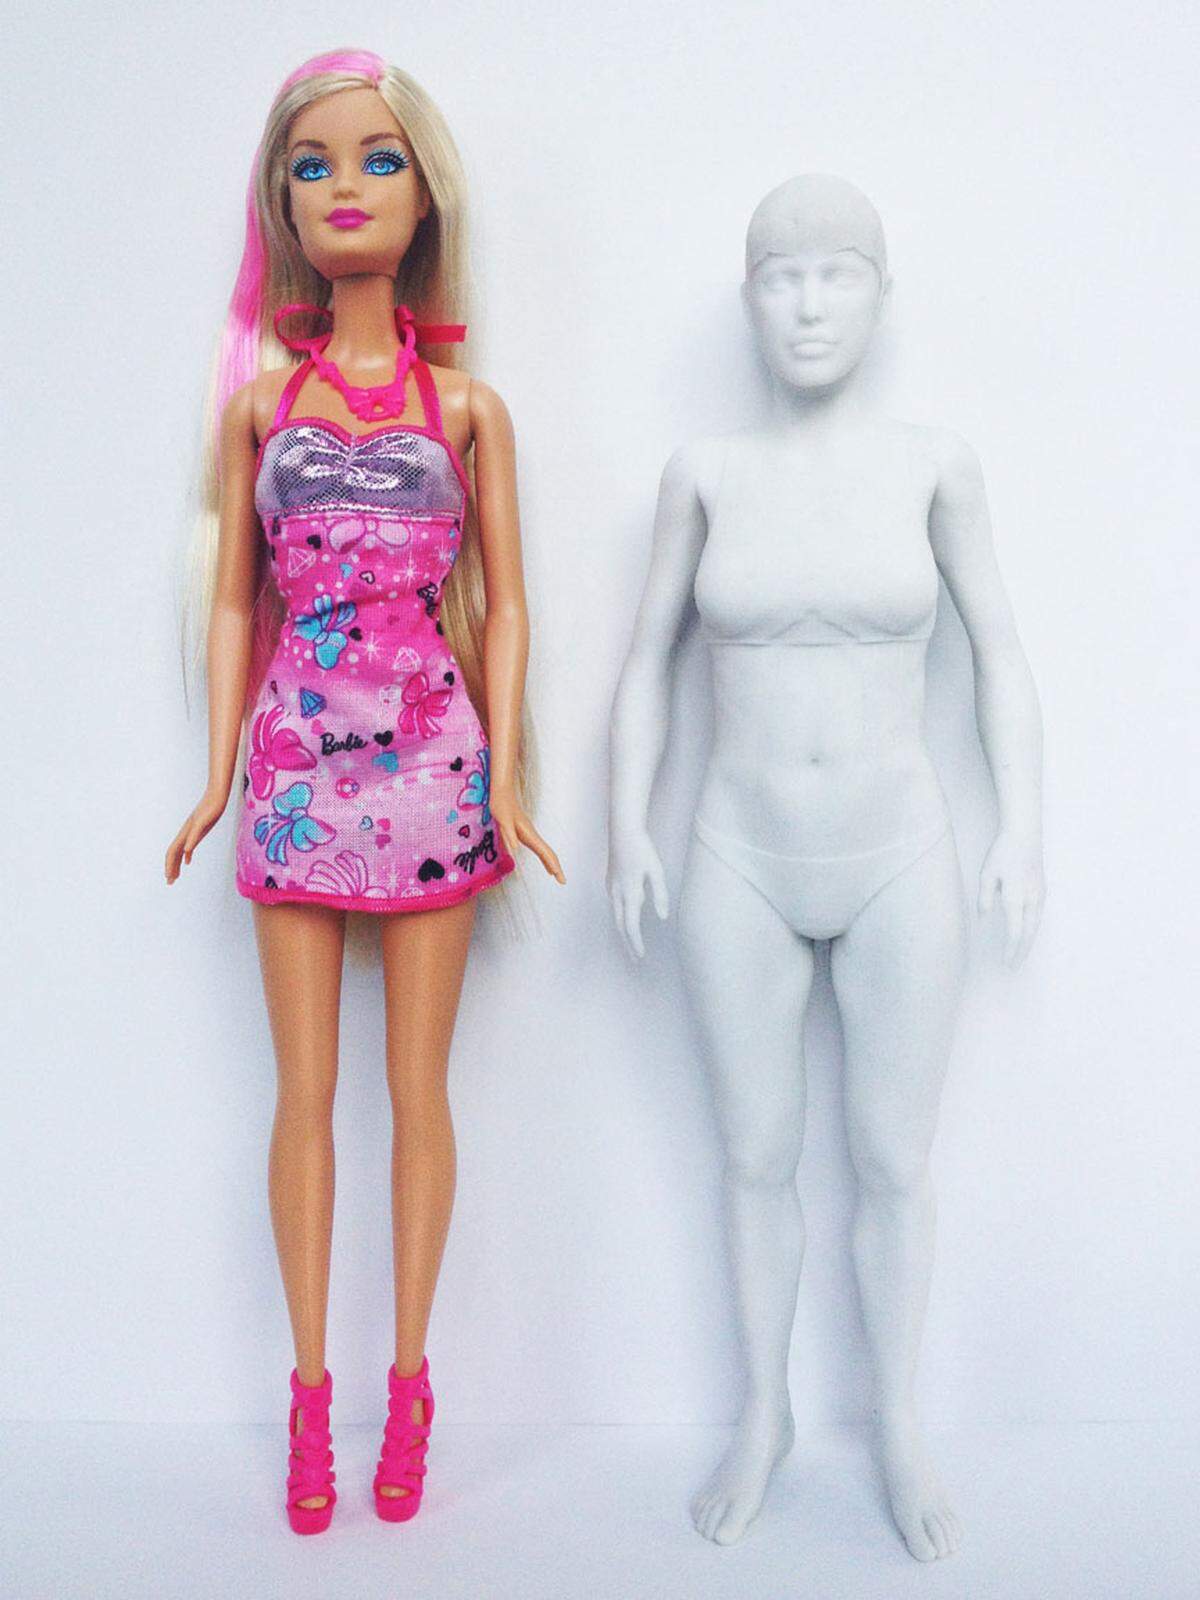 Auf die Idee kam Nickolay Lamm als er für ein Kunstprojekt auf dem Blog MyDeals.com mit einem CDC-Verfahren die Maße einer durchschnittlichen Frau herangezogen und daraus ein 3D-Modell erstellte. Dieses ließ er dann mittels Photoshop wie eine Barbie aussehen.